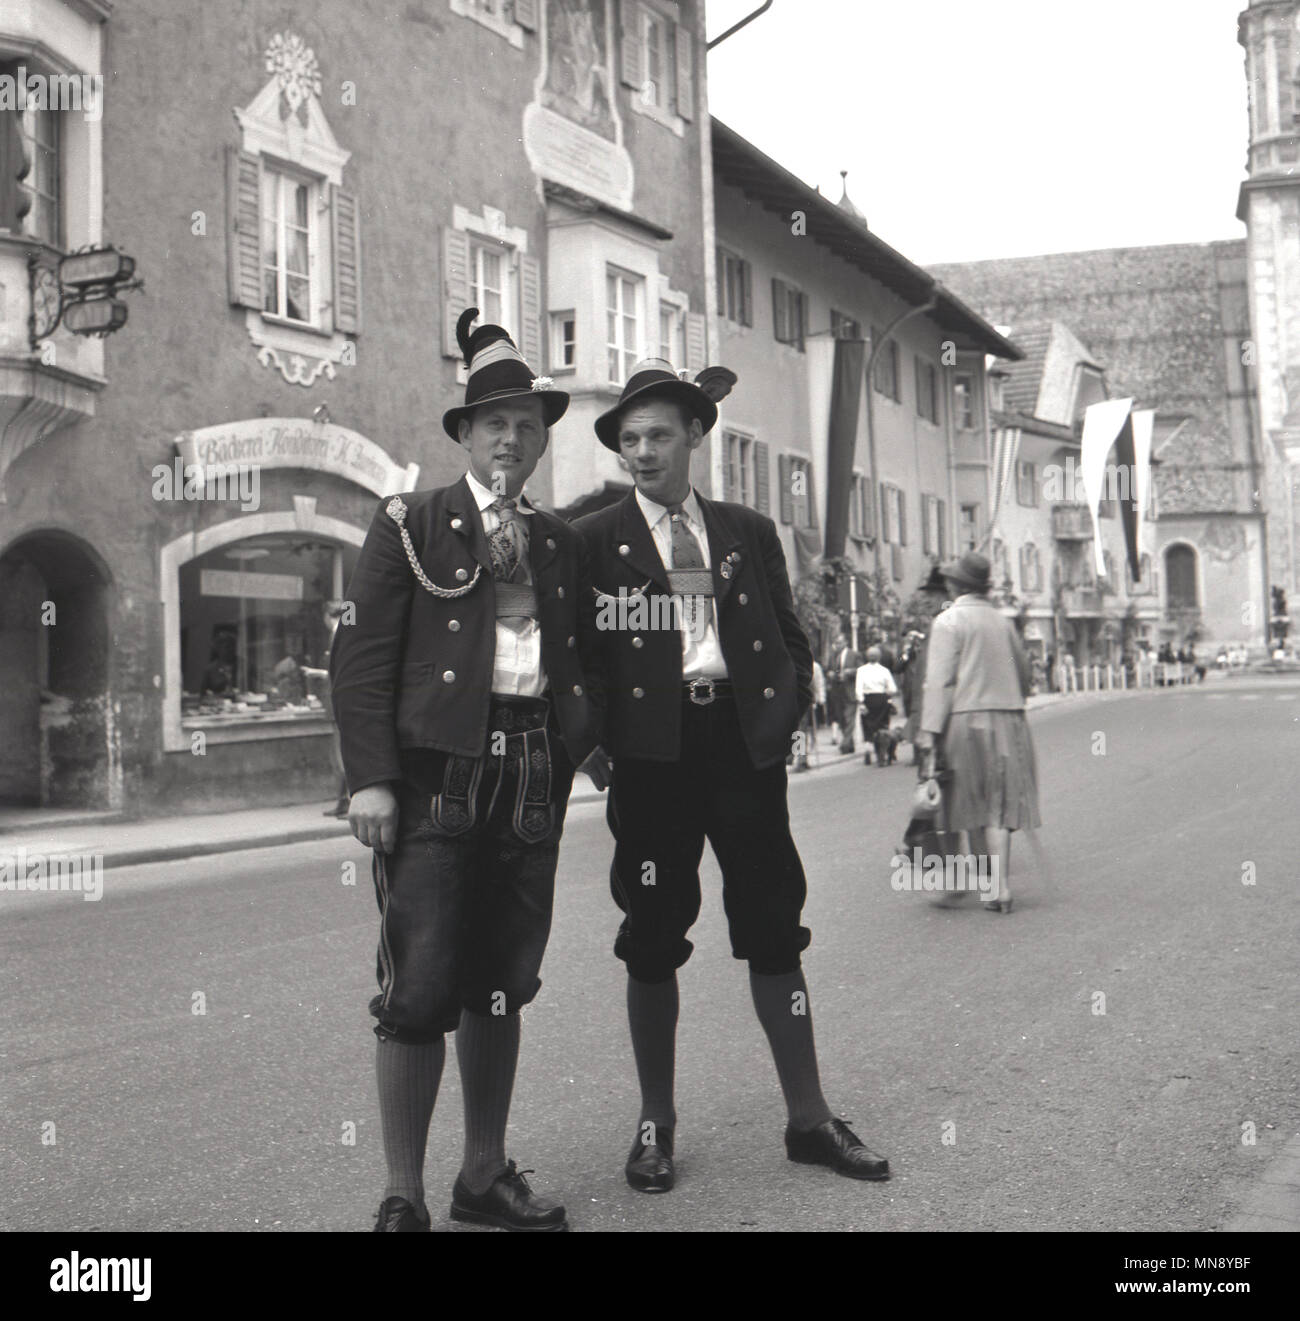 1950er Jahre, Deutschland, zwei Männer zusammen draußen auf der Straße stand das Tragen der traditionellen bayerischen Kleidung der Epoche, eine Form von Lederhosen, bekannt als Bundhosen. Hier sind sie elegant in die vollständige Outfit gekleidet, der knielange Hose mit Jacken und Mützen. Stockfoto